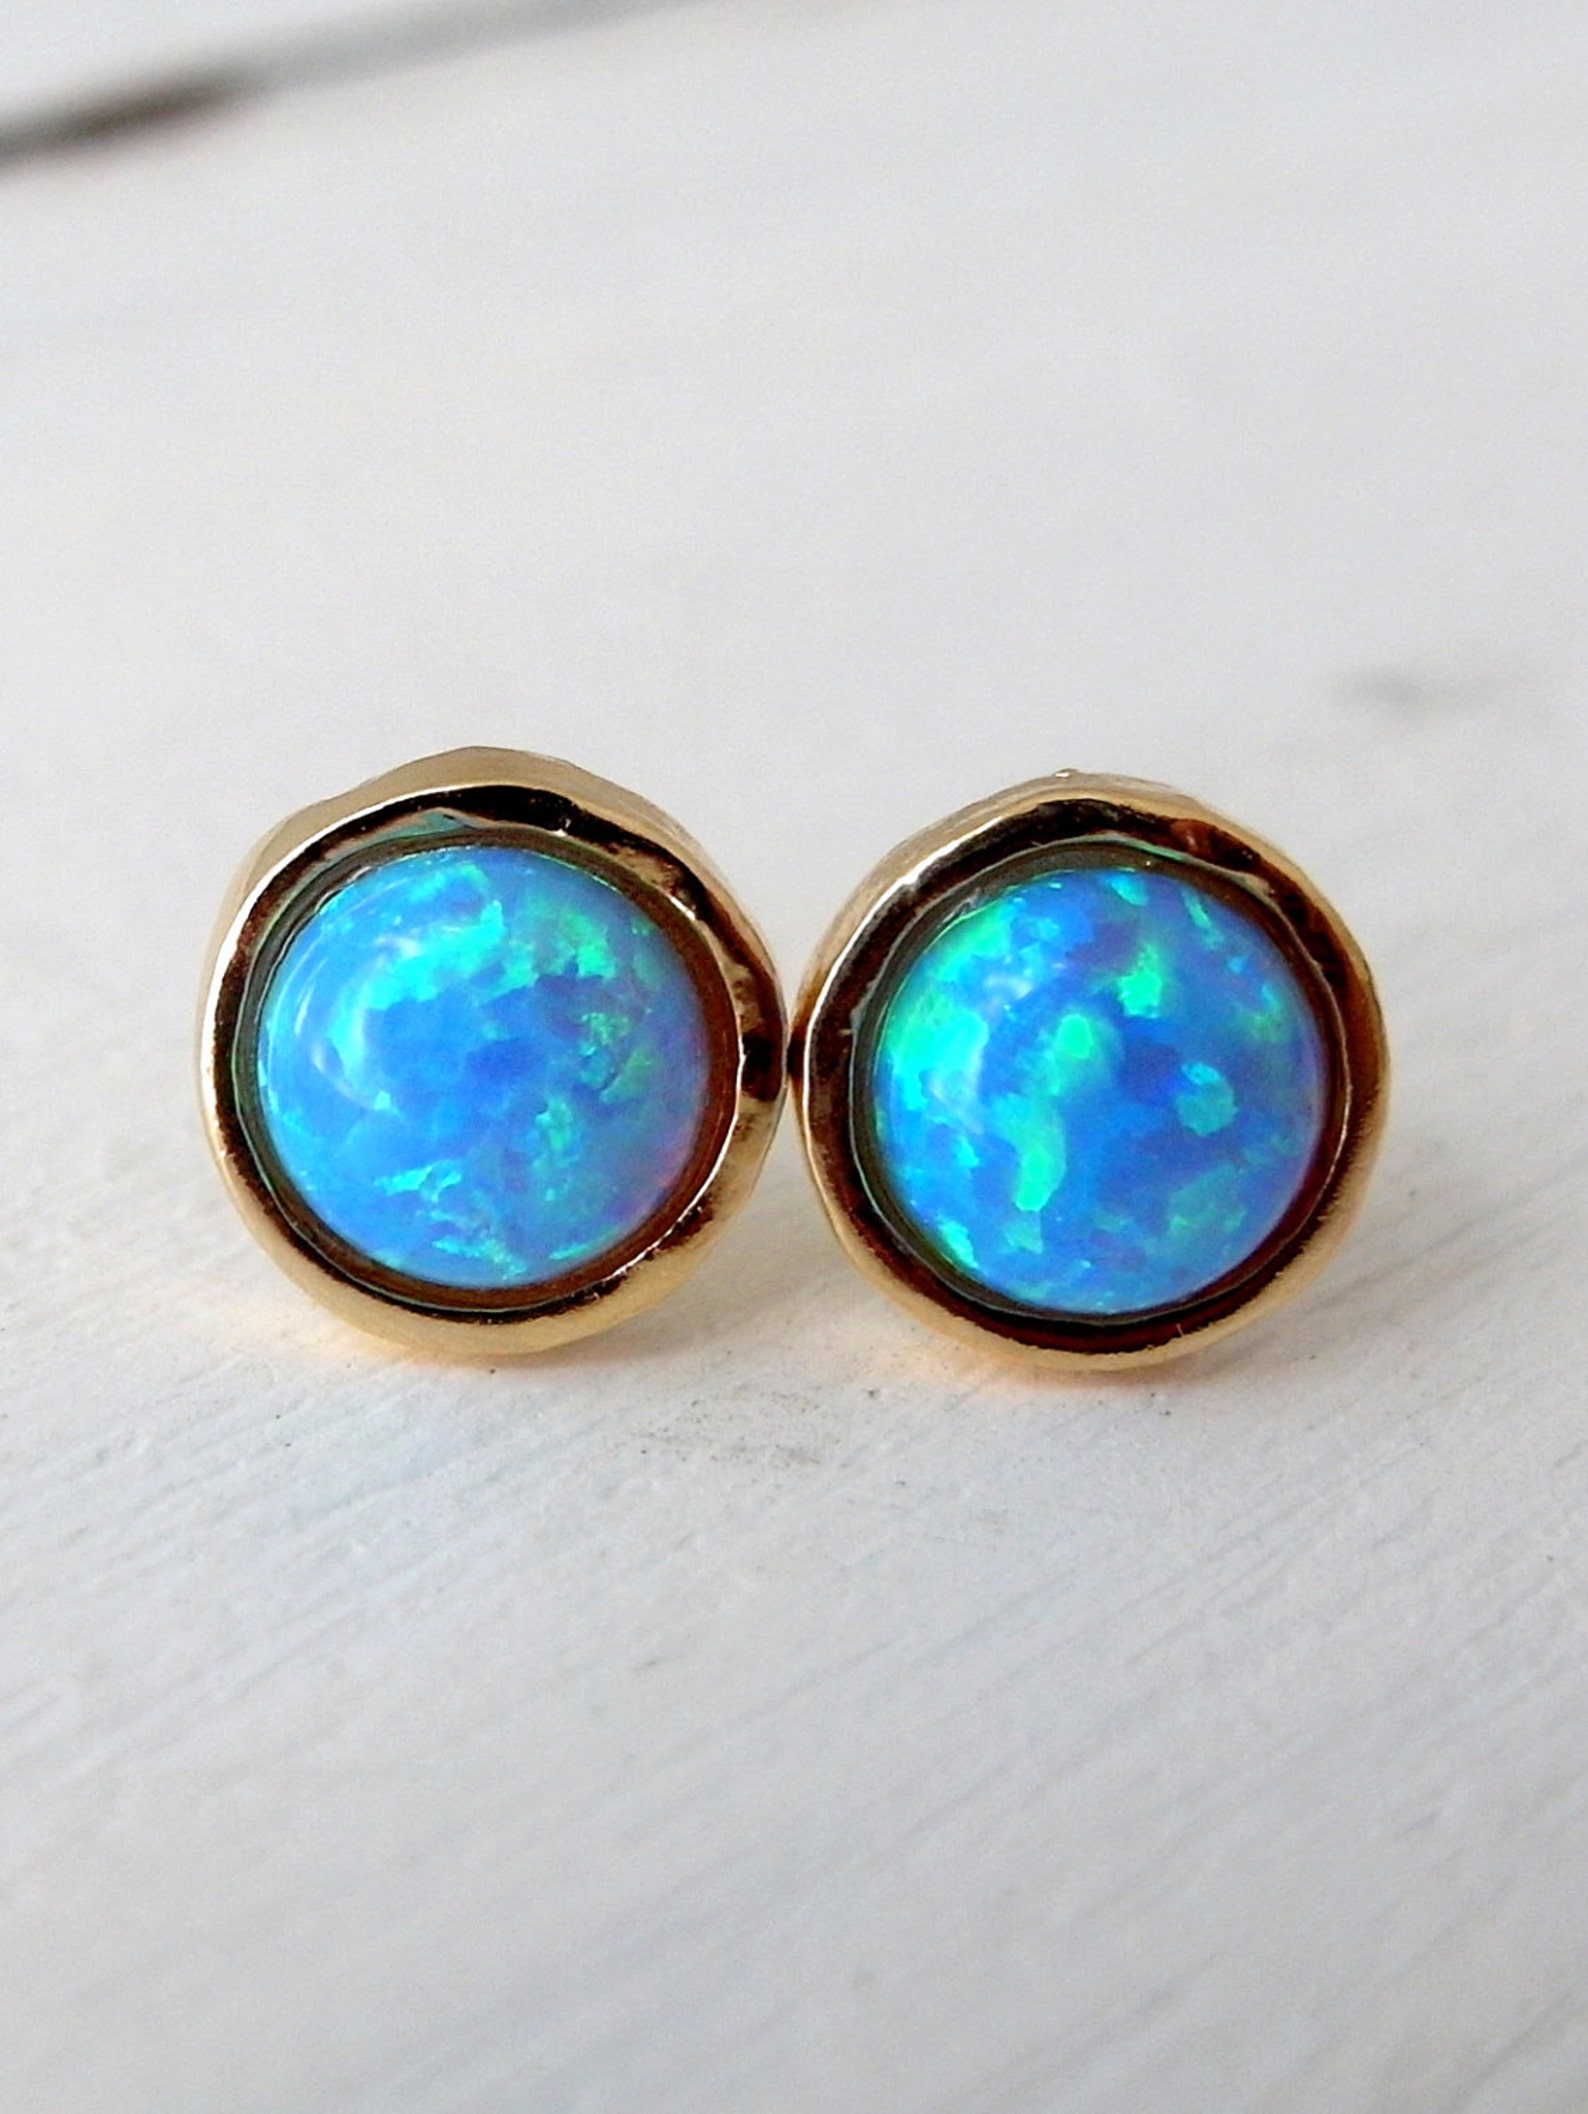 Opal Stud Earrings Blue Stud Earrings Gold Filled or Silver - Etsy